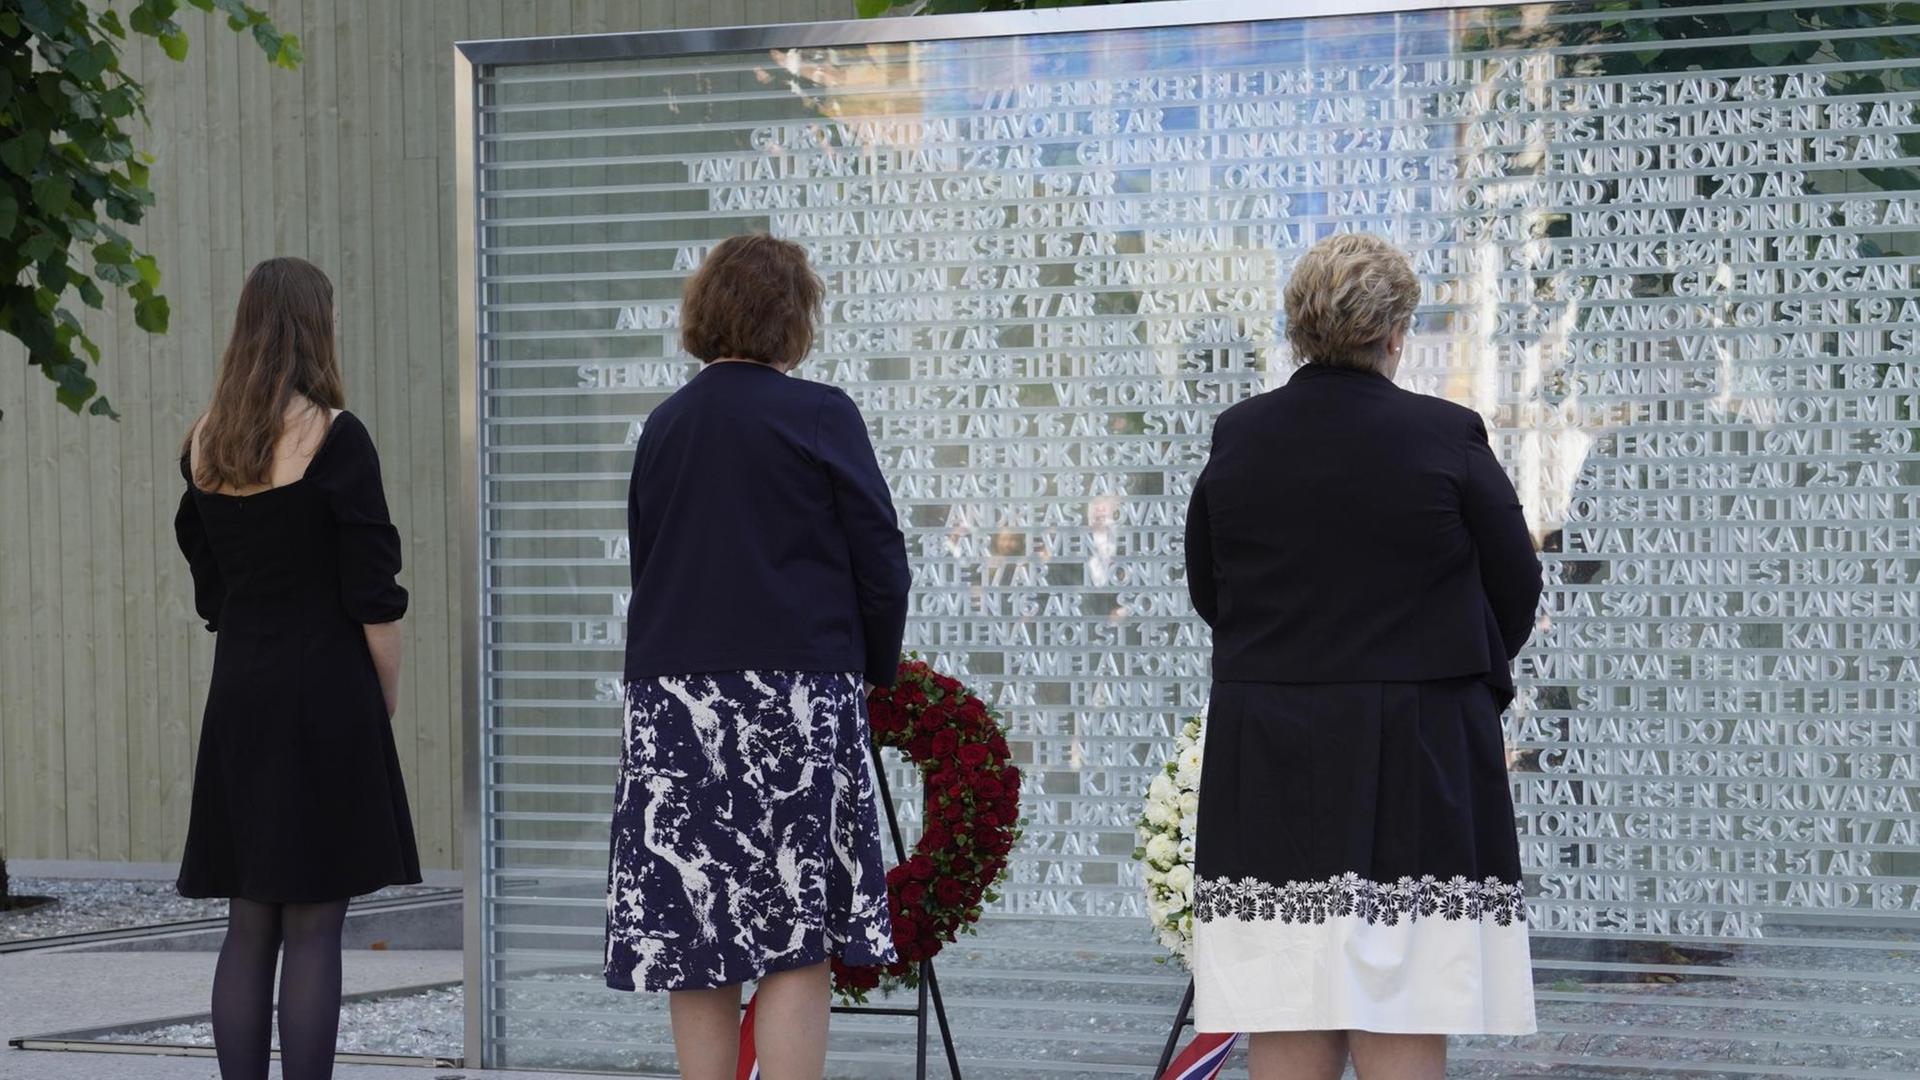 Erinnerung an das Massaker von Utoya 2011, drei Personen stehen vor einer Gedenktafel